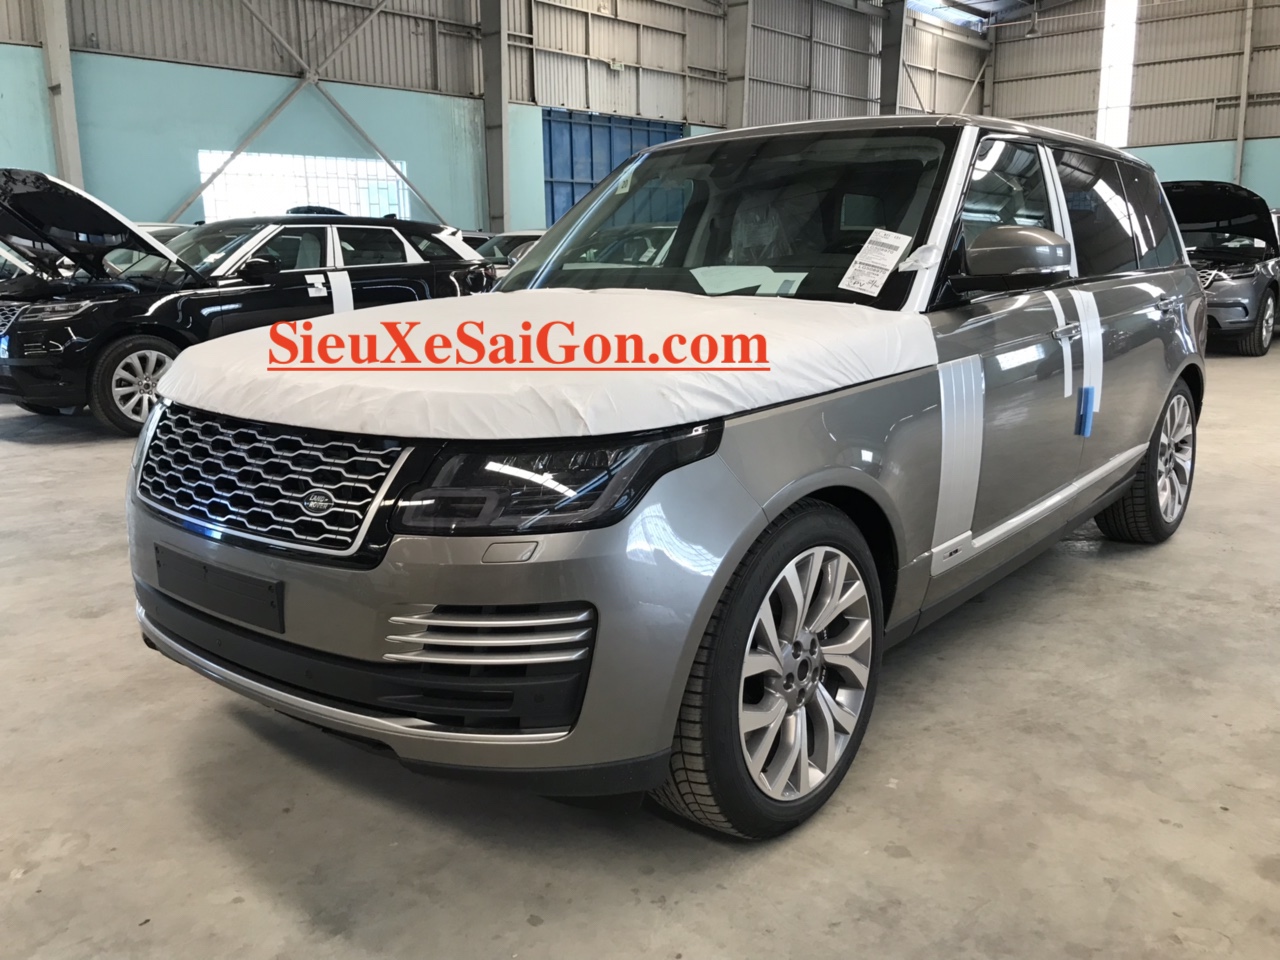 Mẫu Động Cơ 3.0 V6 Range Rover Phiên Bản Dài LWB Autobiography 2018 Model 2019 Giao Ngay Giá Bao Nhieu Tiền - màu silicon silver ánh kim bạc